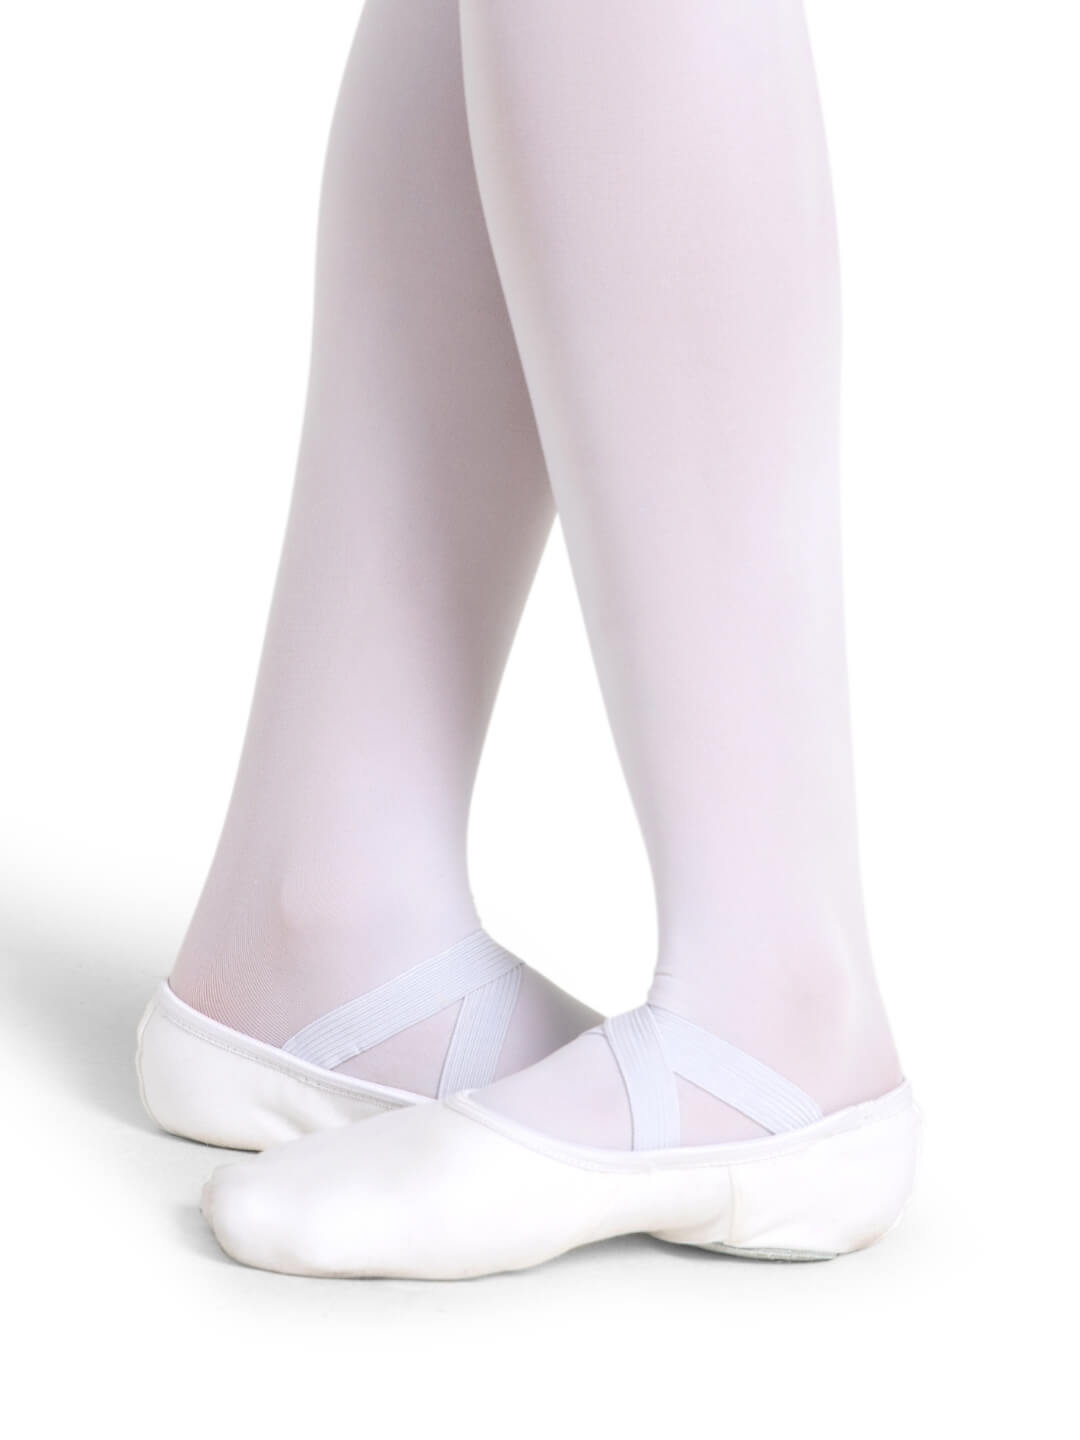 Hanami Canvas Split-Sole Ballet Shoes - Adult - White